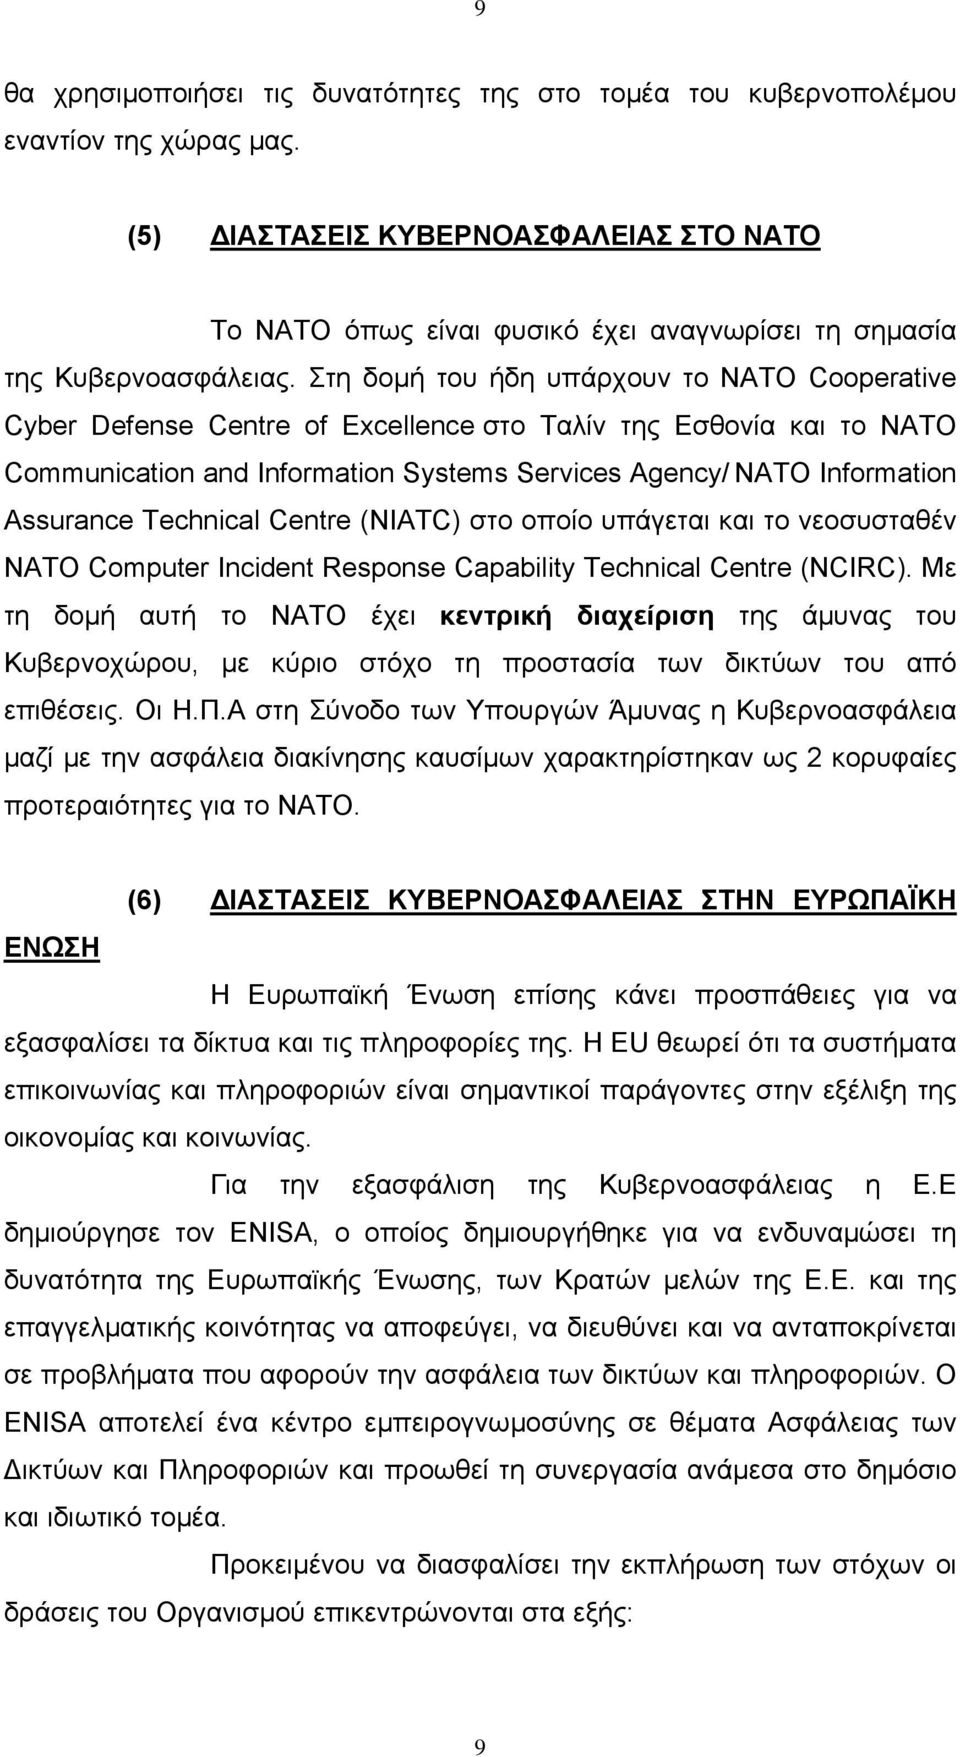 Στη δομή του ήδη υπάρχουν το NATO Cooperative Cyber Defense Centre of Excellence στο Ταλίν της Εσθονία και το NATO Communication and Information Systems Services Agency/ NATO Information Assurance